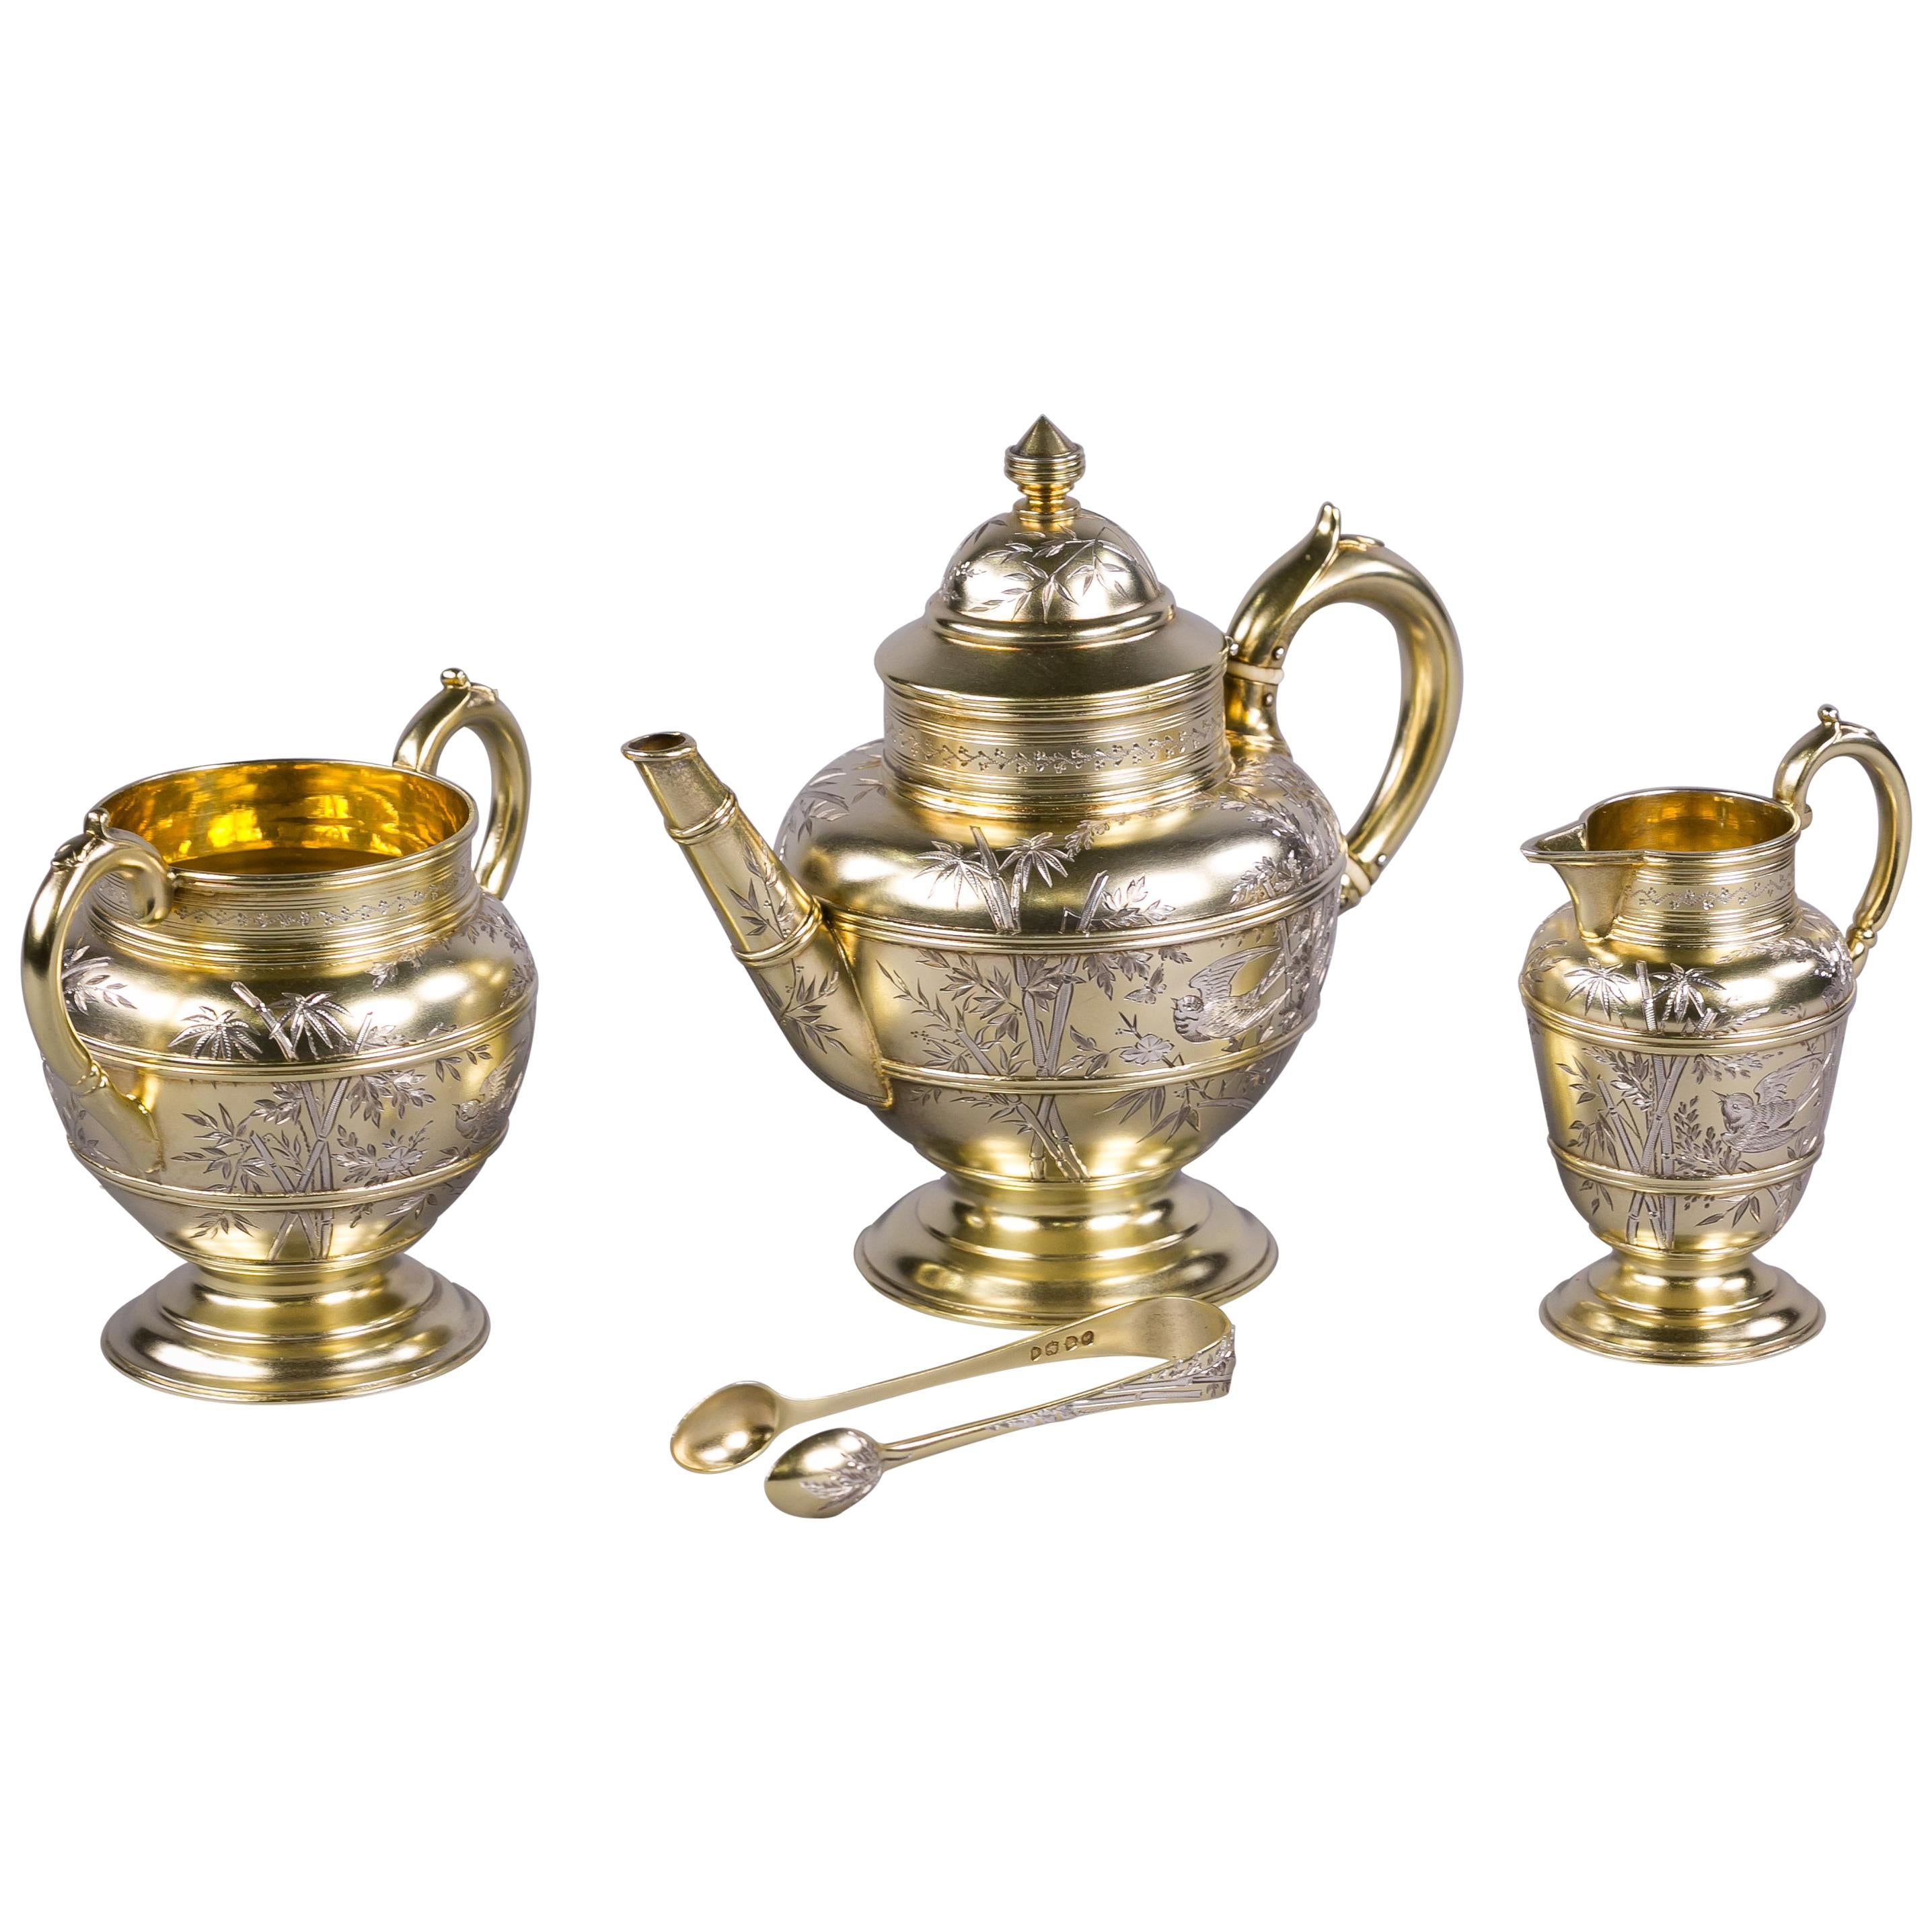 Four Piece English Parcel-Gilt Silver Bachelor Tea Service